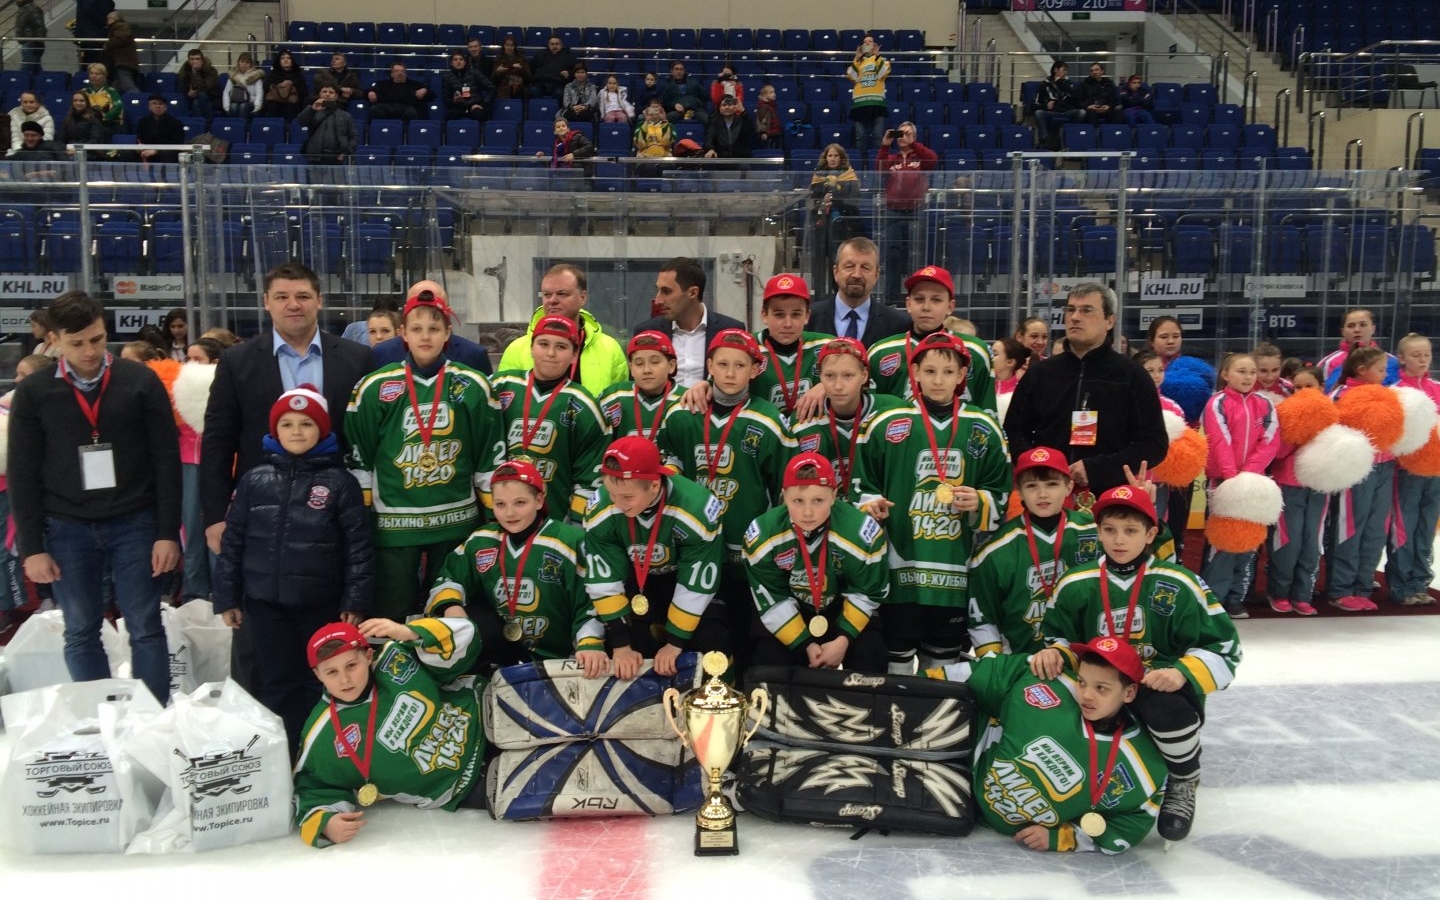 Хоккеисты клуба "Лидер 1420" стали победителями Детской лиги "Легенды Хоккея" в трех возрастных категориях